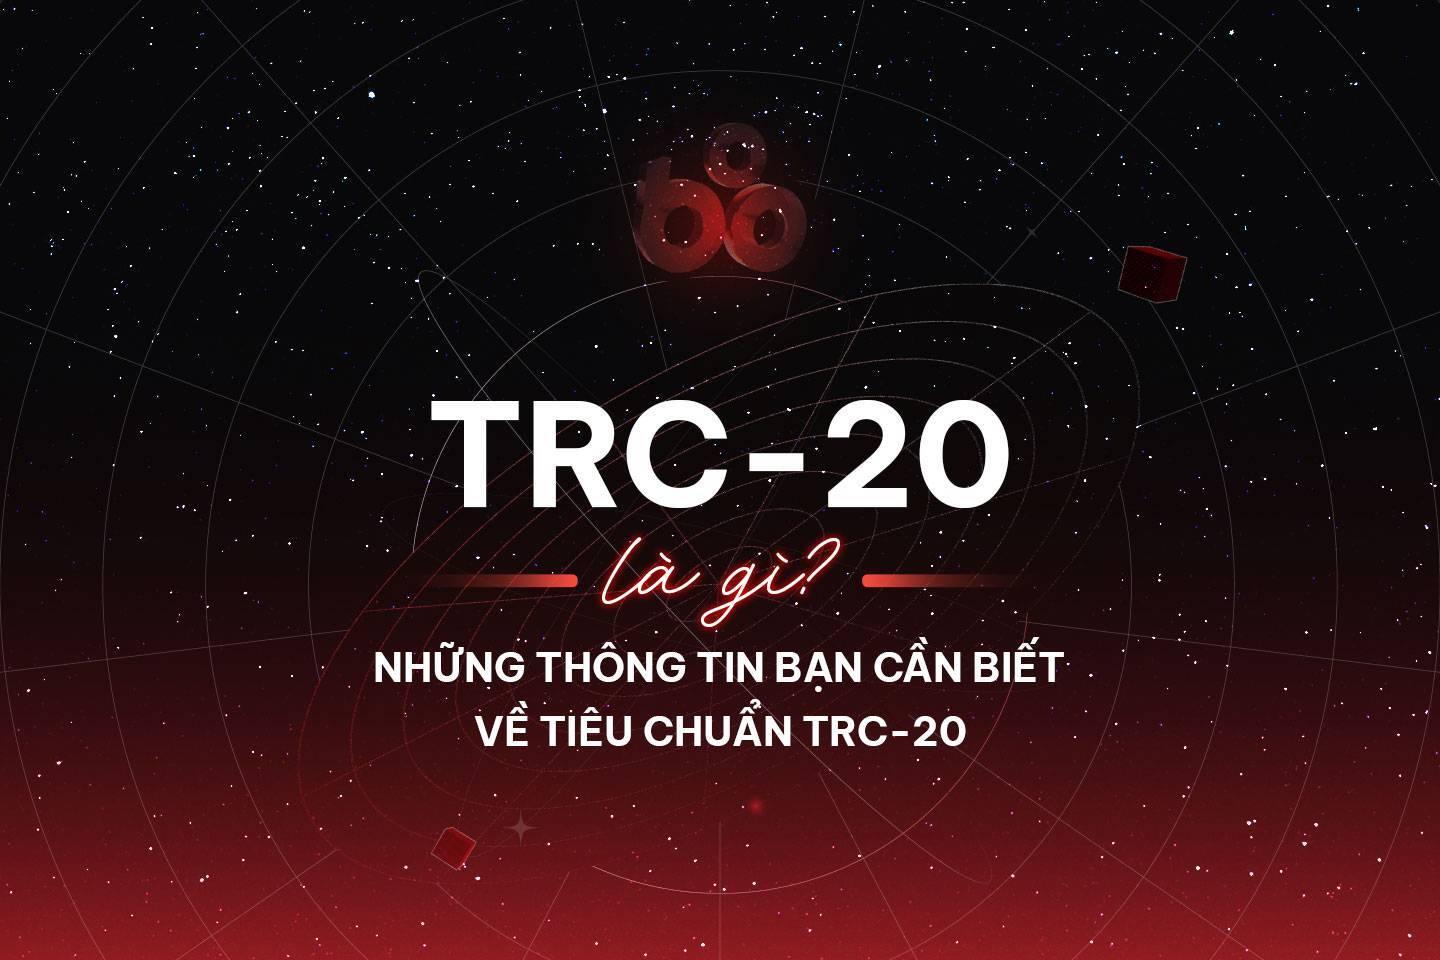 trc-20-la-gi-nhung-thong-tin-ban-can-biet-ve-tieu-chuan-token-trc-20